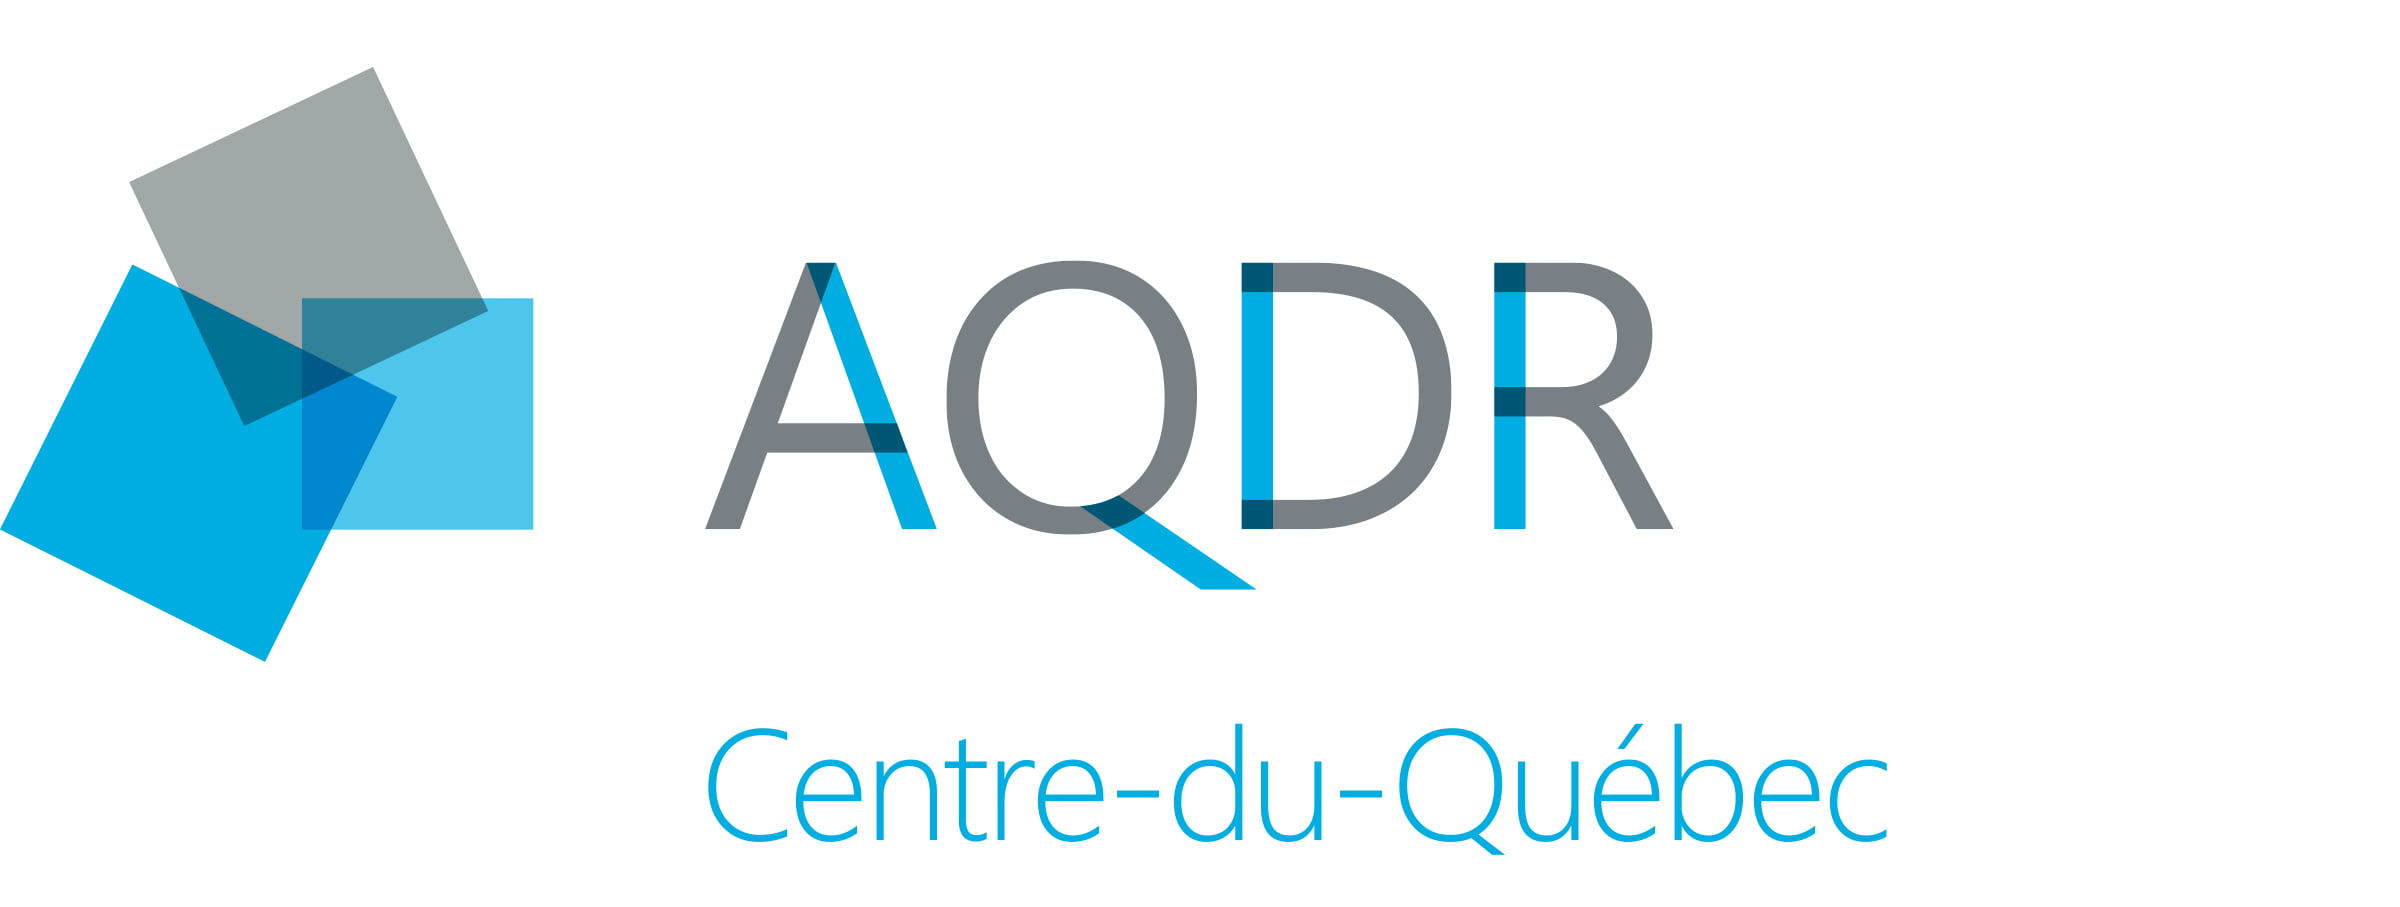 La lettre de l’AQDR Centre du Québec à Mario Dumont de Québecor média